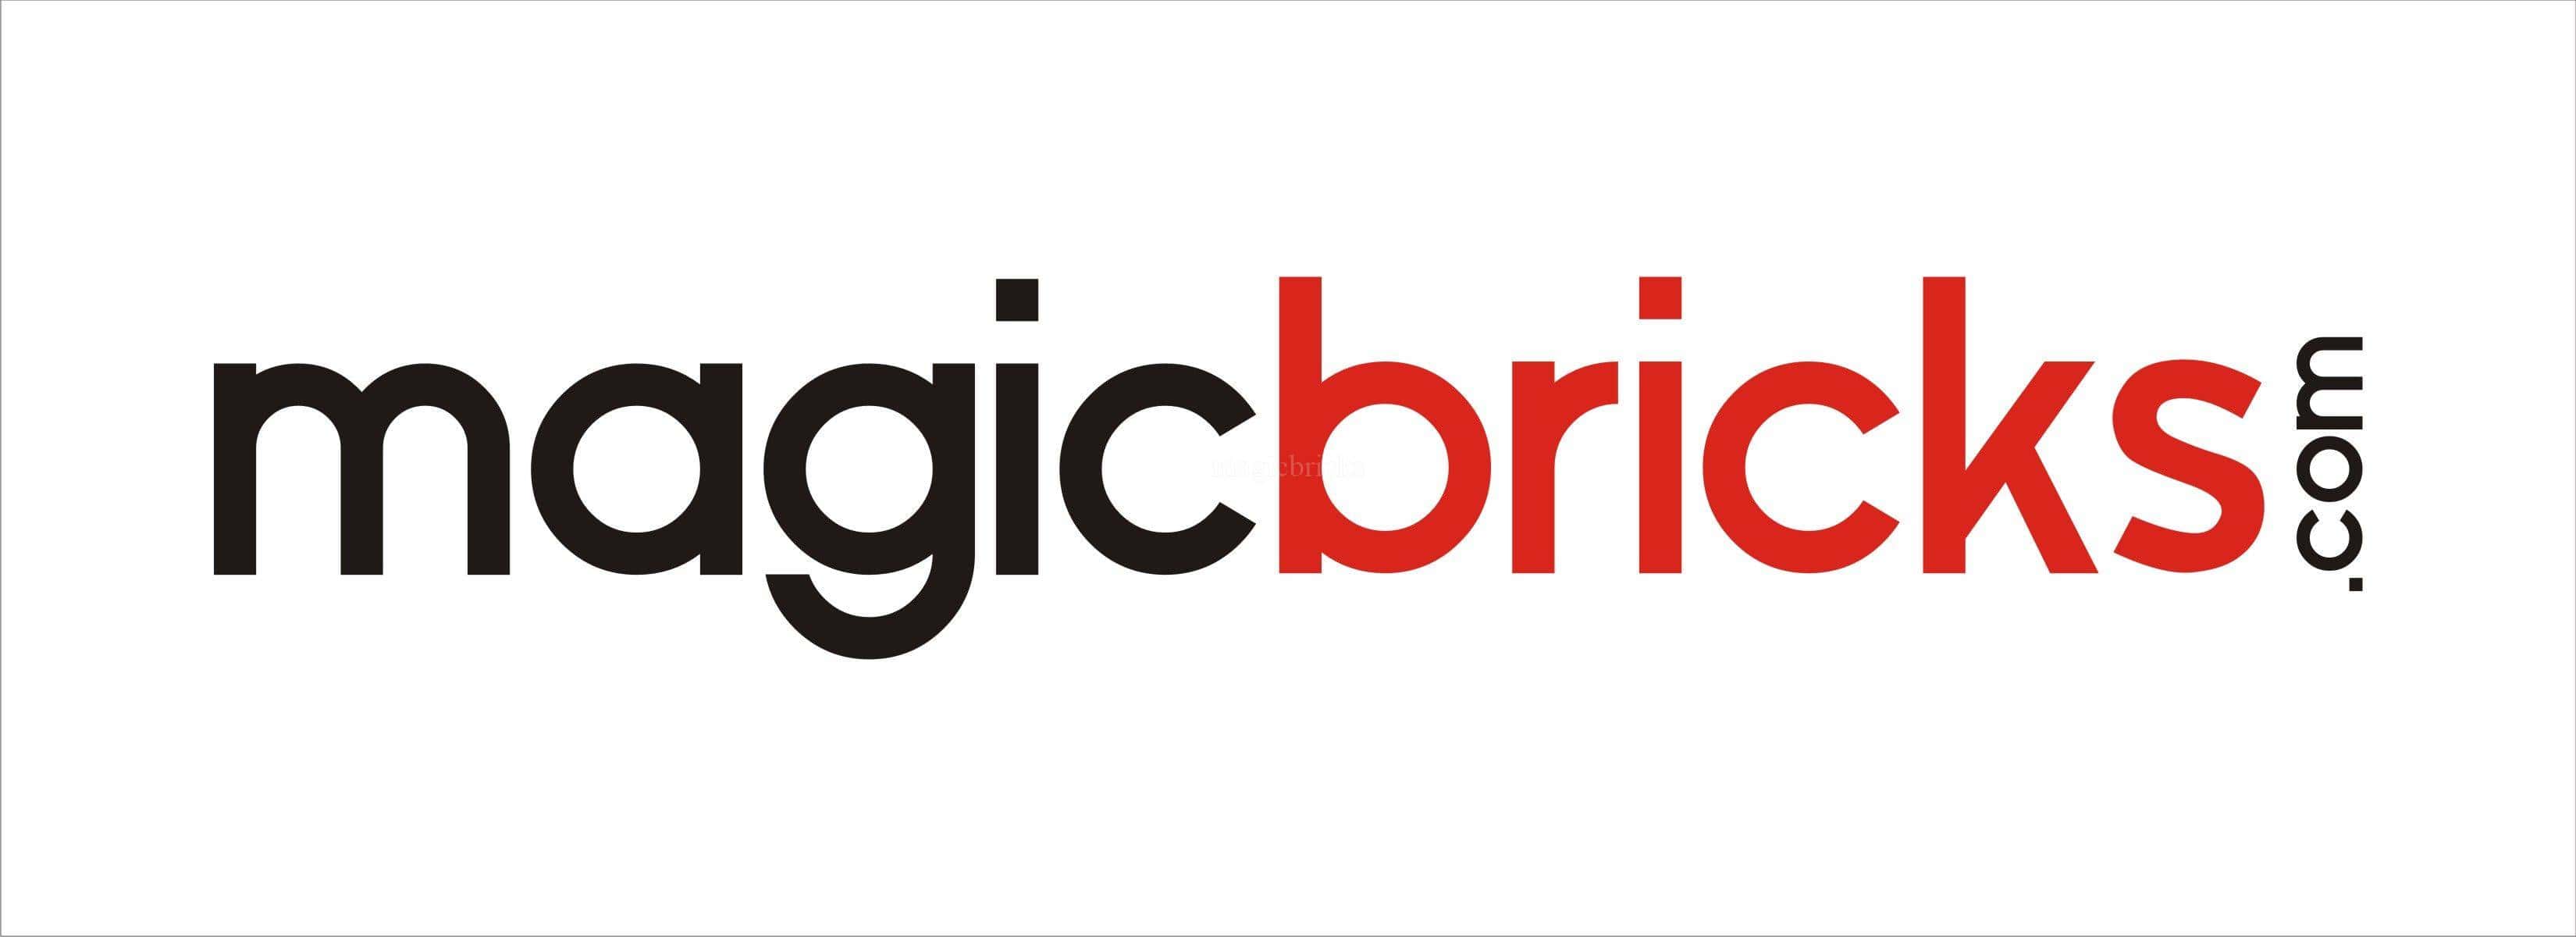 magicbrickes-spesker-logo.JPG